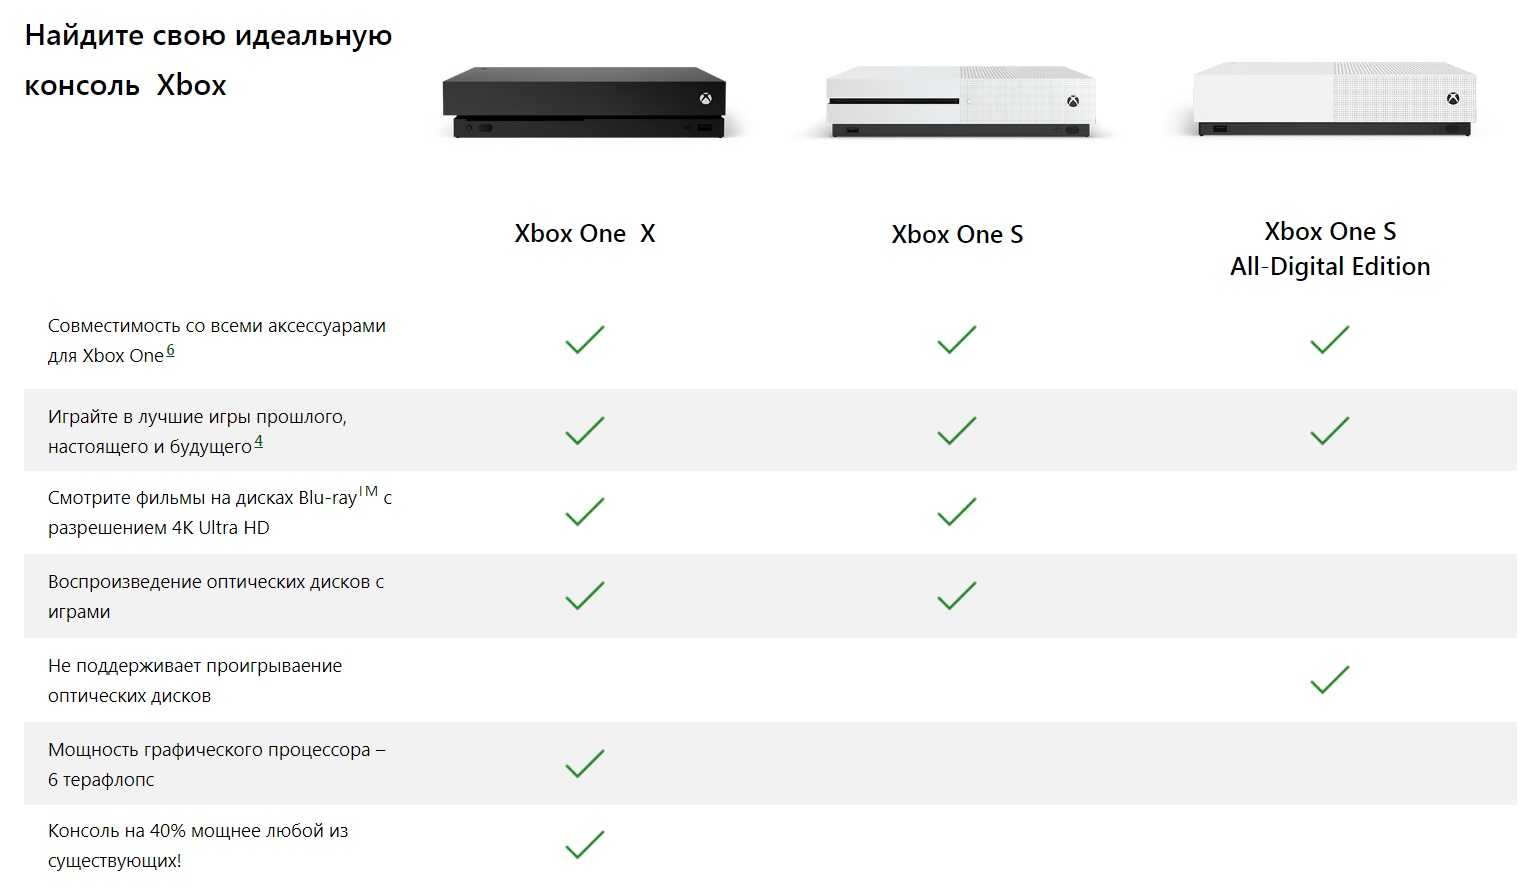 И Xbox One S, и Xbox One X оснащены большим объемом дискового пространства с опциями 500 ГБ и 1 ТБ Это означает, что у вас больше передышки, чем для